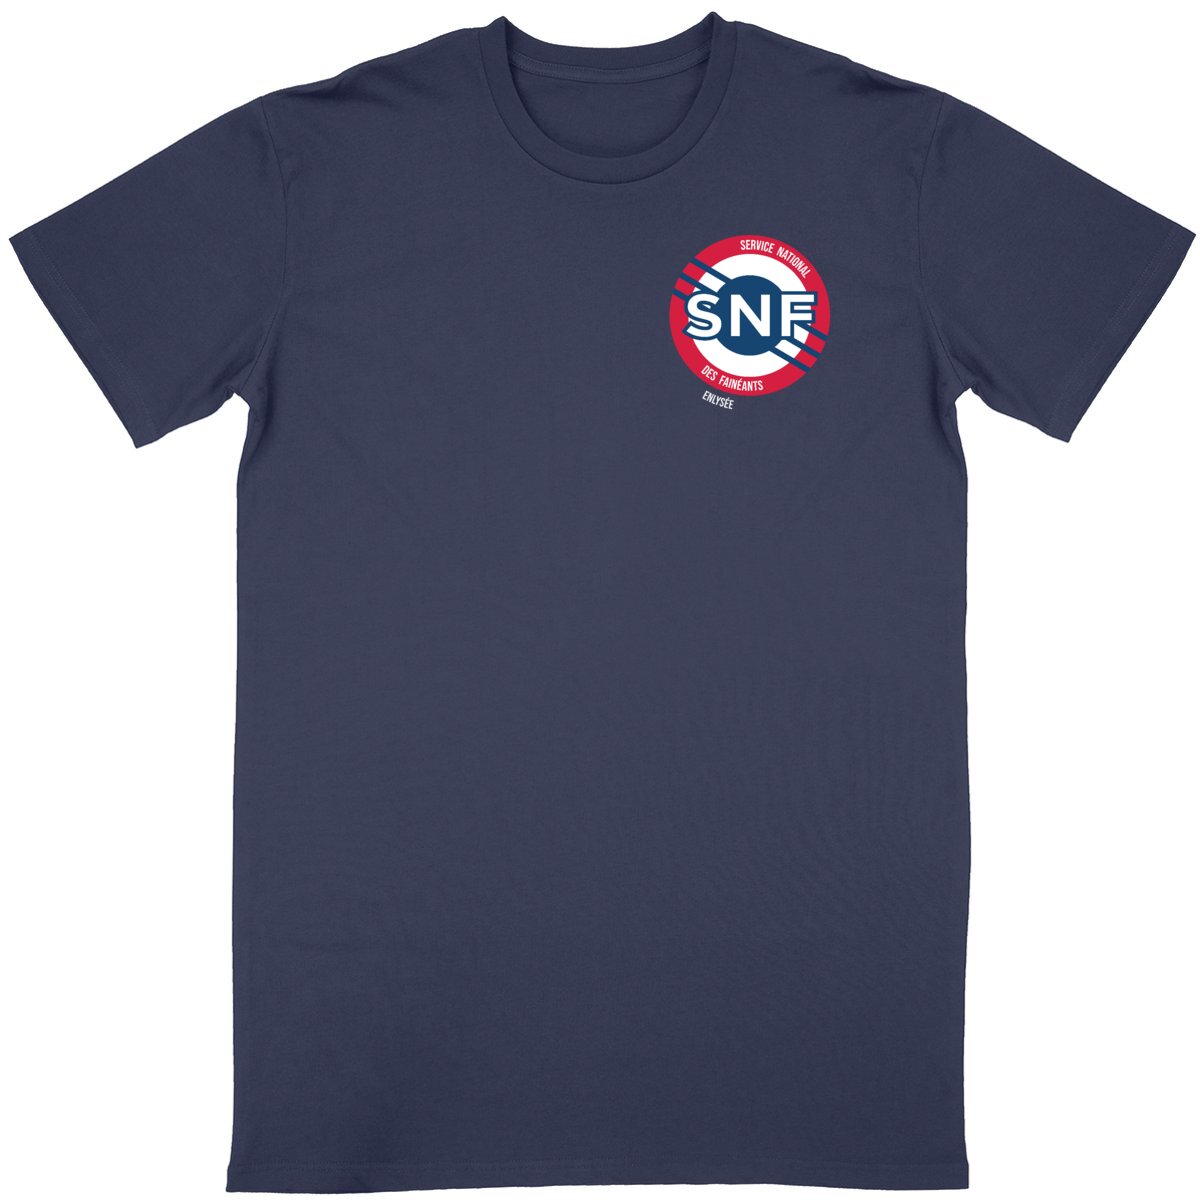 Le Tee-shirt SNF sombre